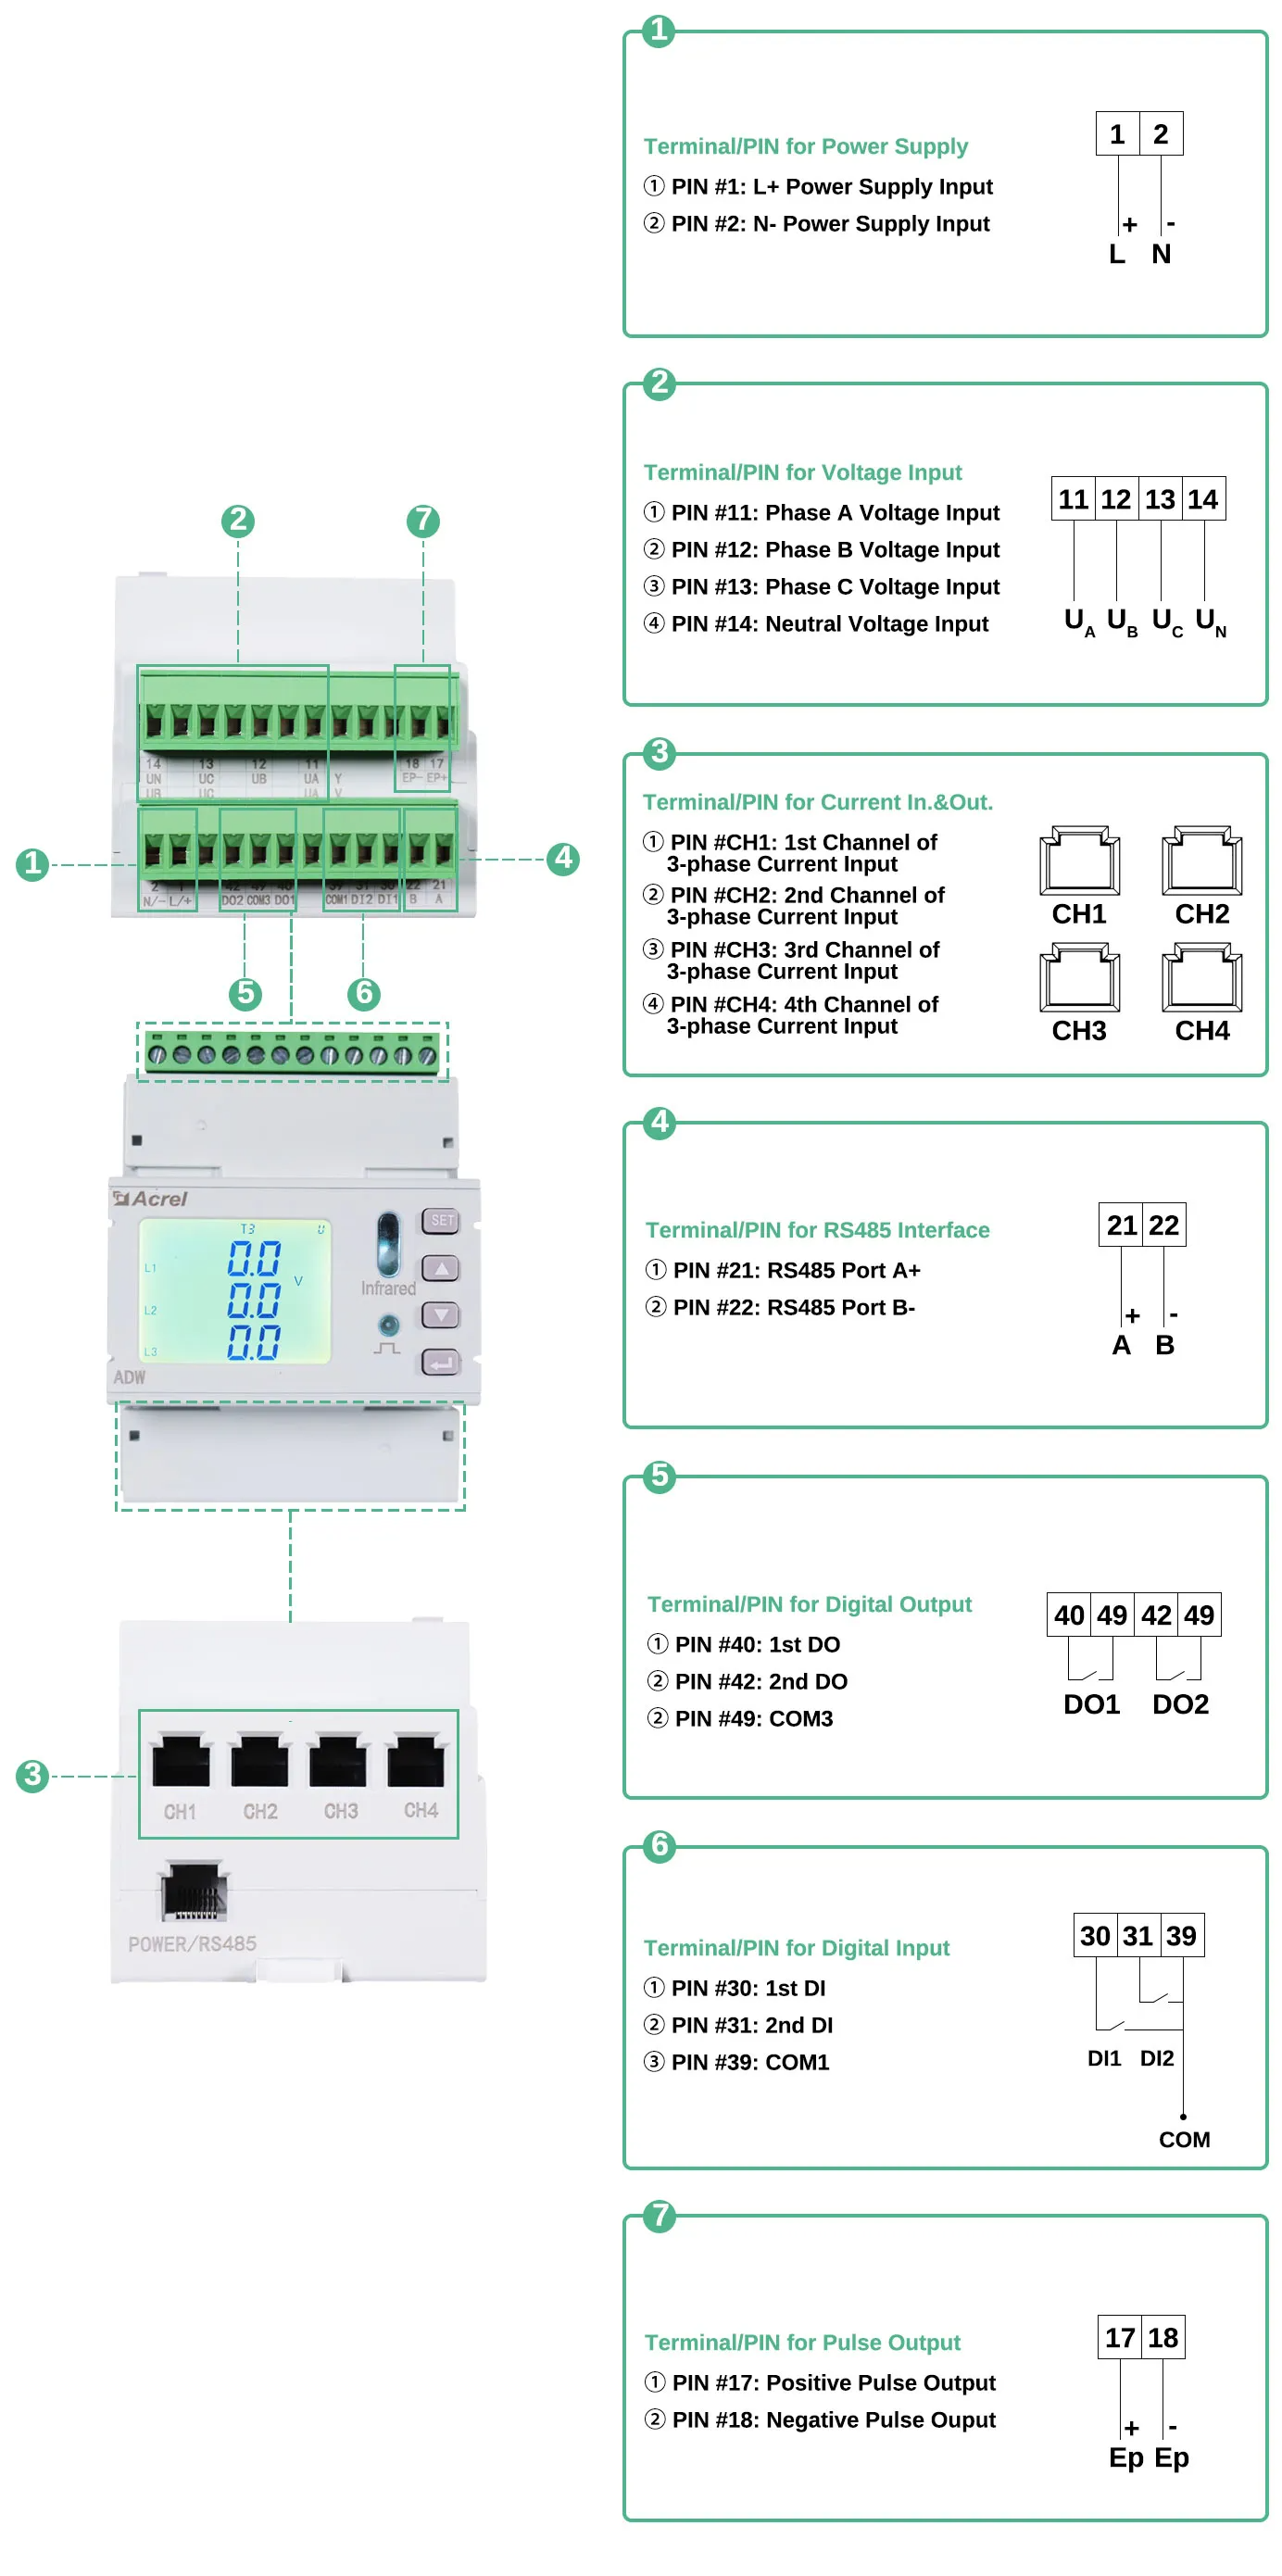 acrel-adw210-multi-circuits-smart-energy-meter-in-bulk.png